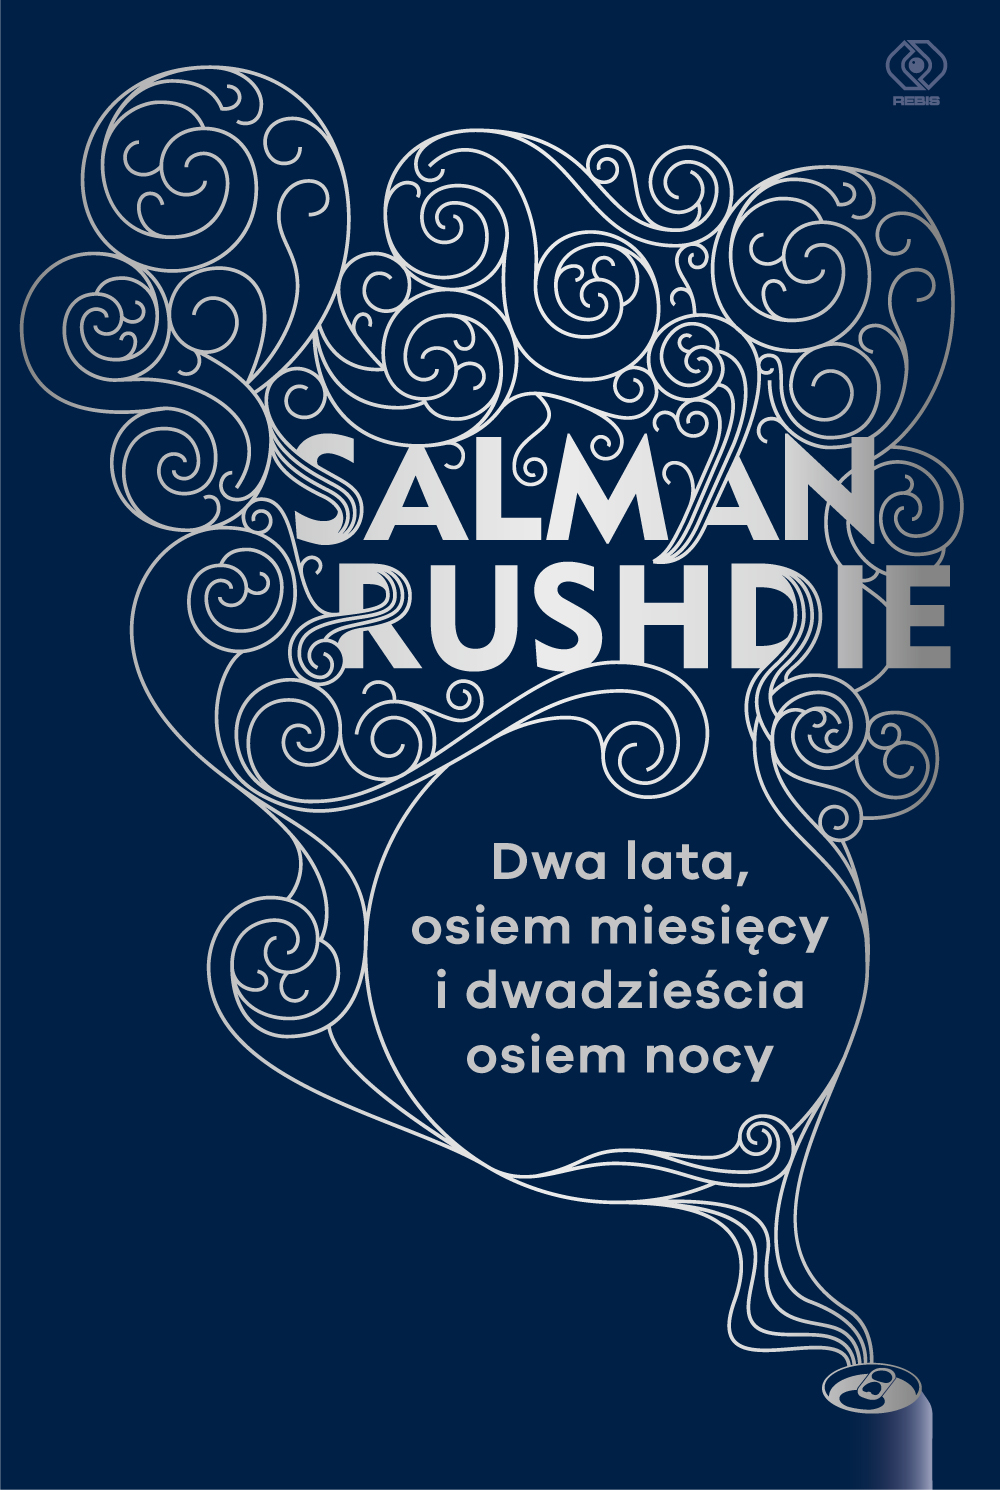 Salman Rushdie, „Dwa lata, osiem miesięcy i dwadzieścia osiem nocy” – okładka (źródło: materiały prasowe)